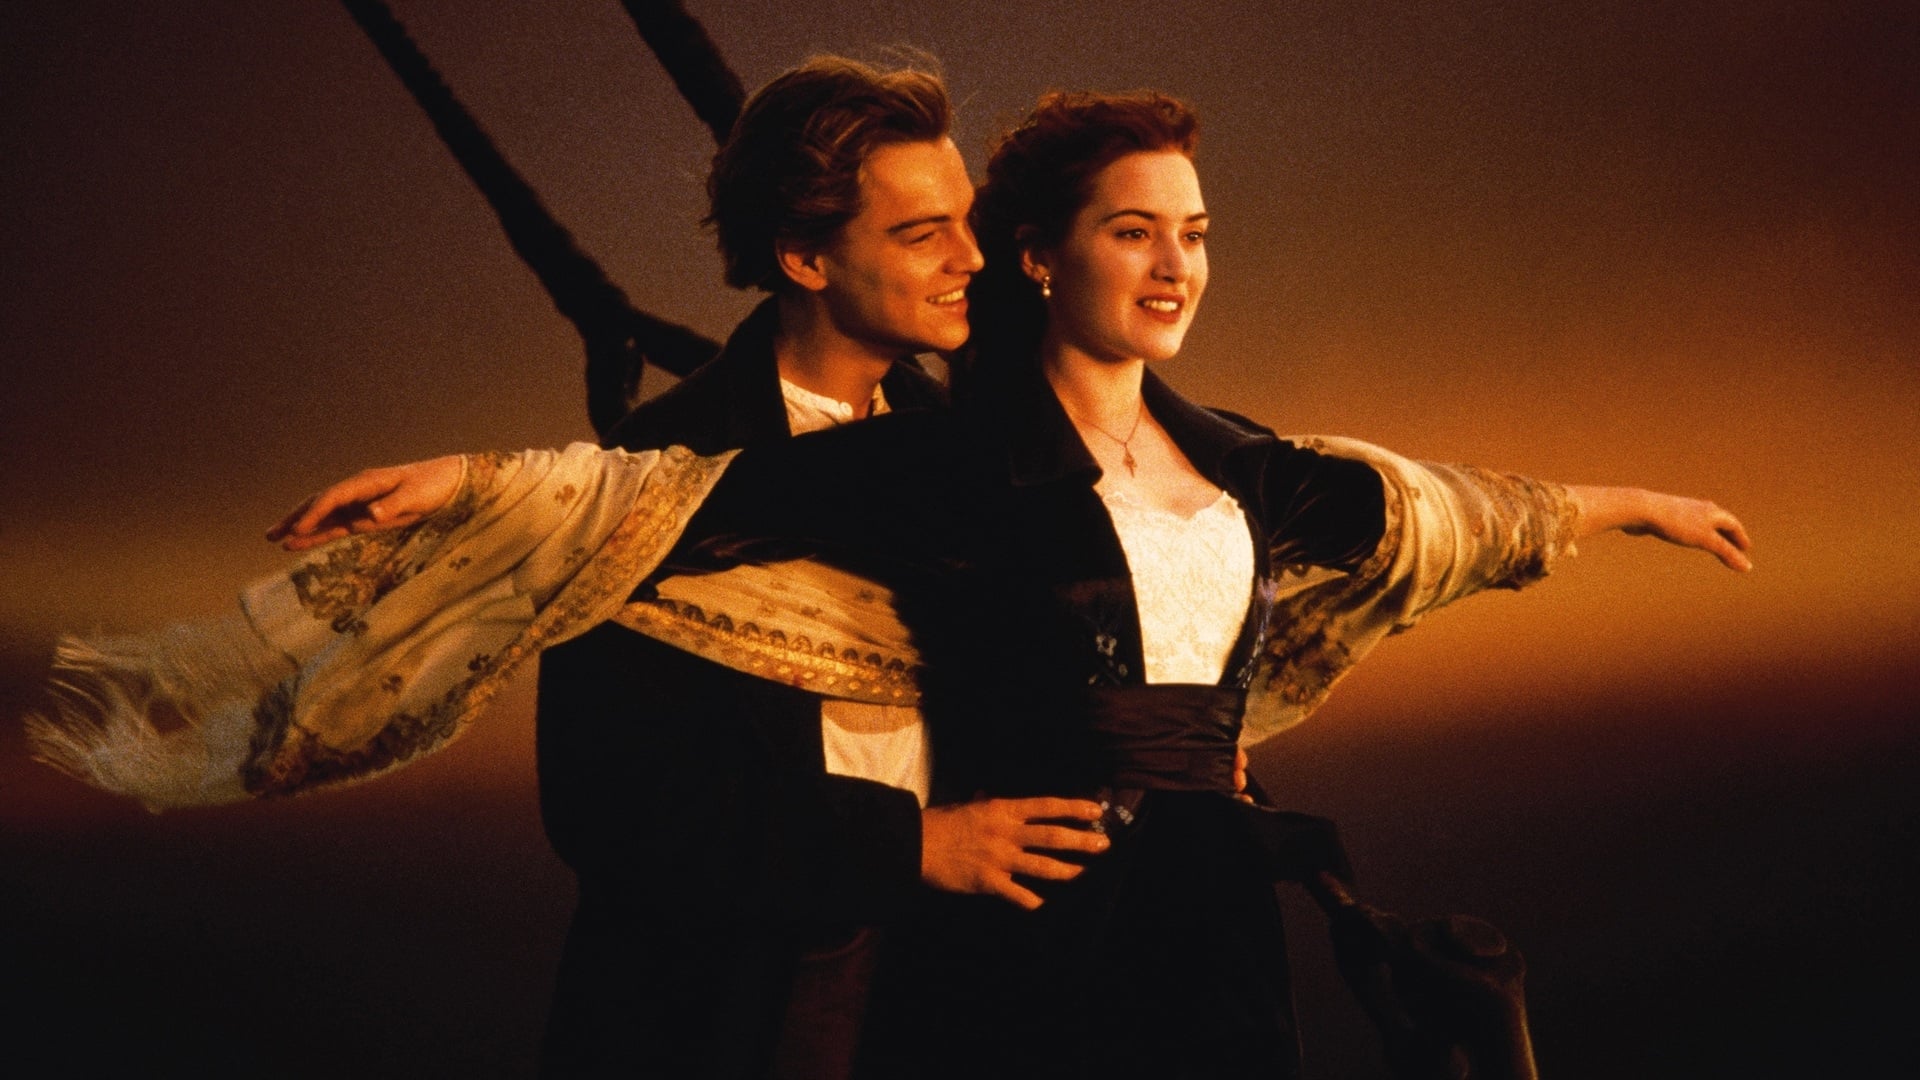 Image du film Titanic 3wjbxaqyb4vabdufdr5vbgld2jzjpg